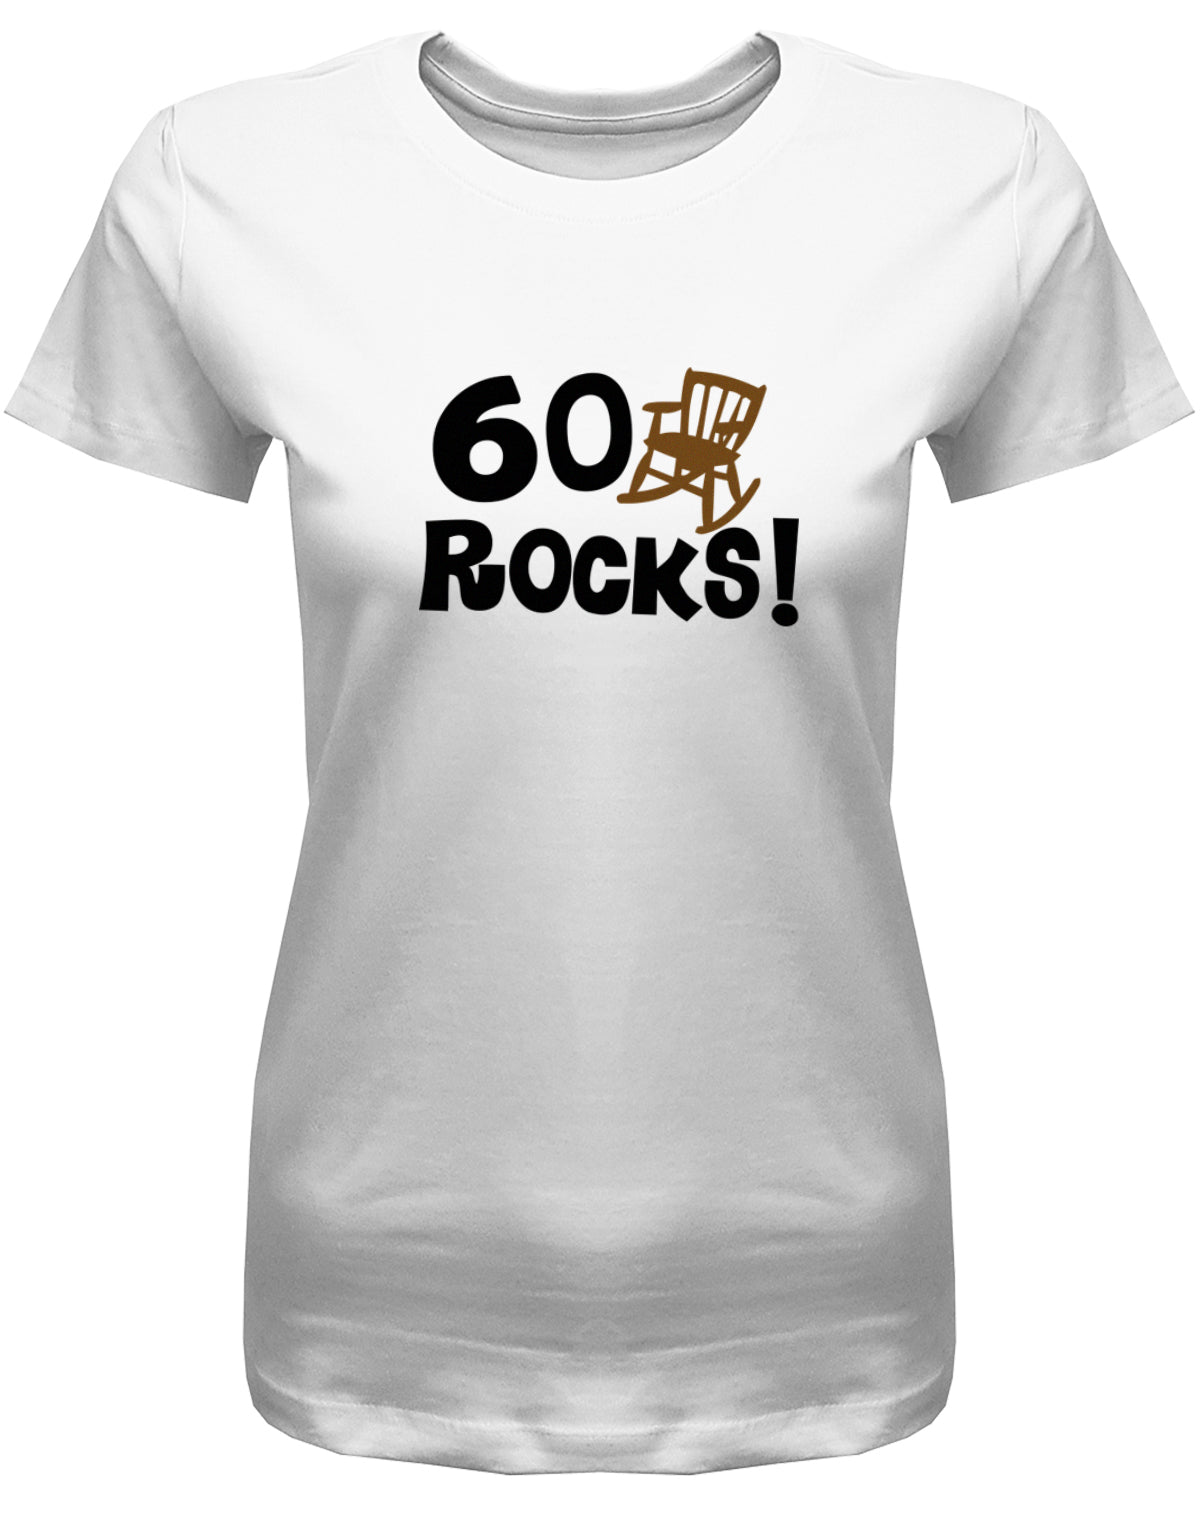 Lustiges T-Shirt zum 60 Geburtstag für die Frau Bedruckt mit 60 Rocks Schaukelstuhl. Weiss